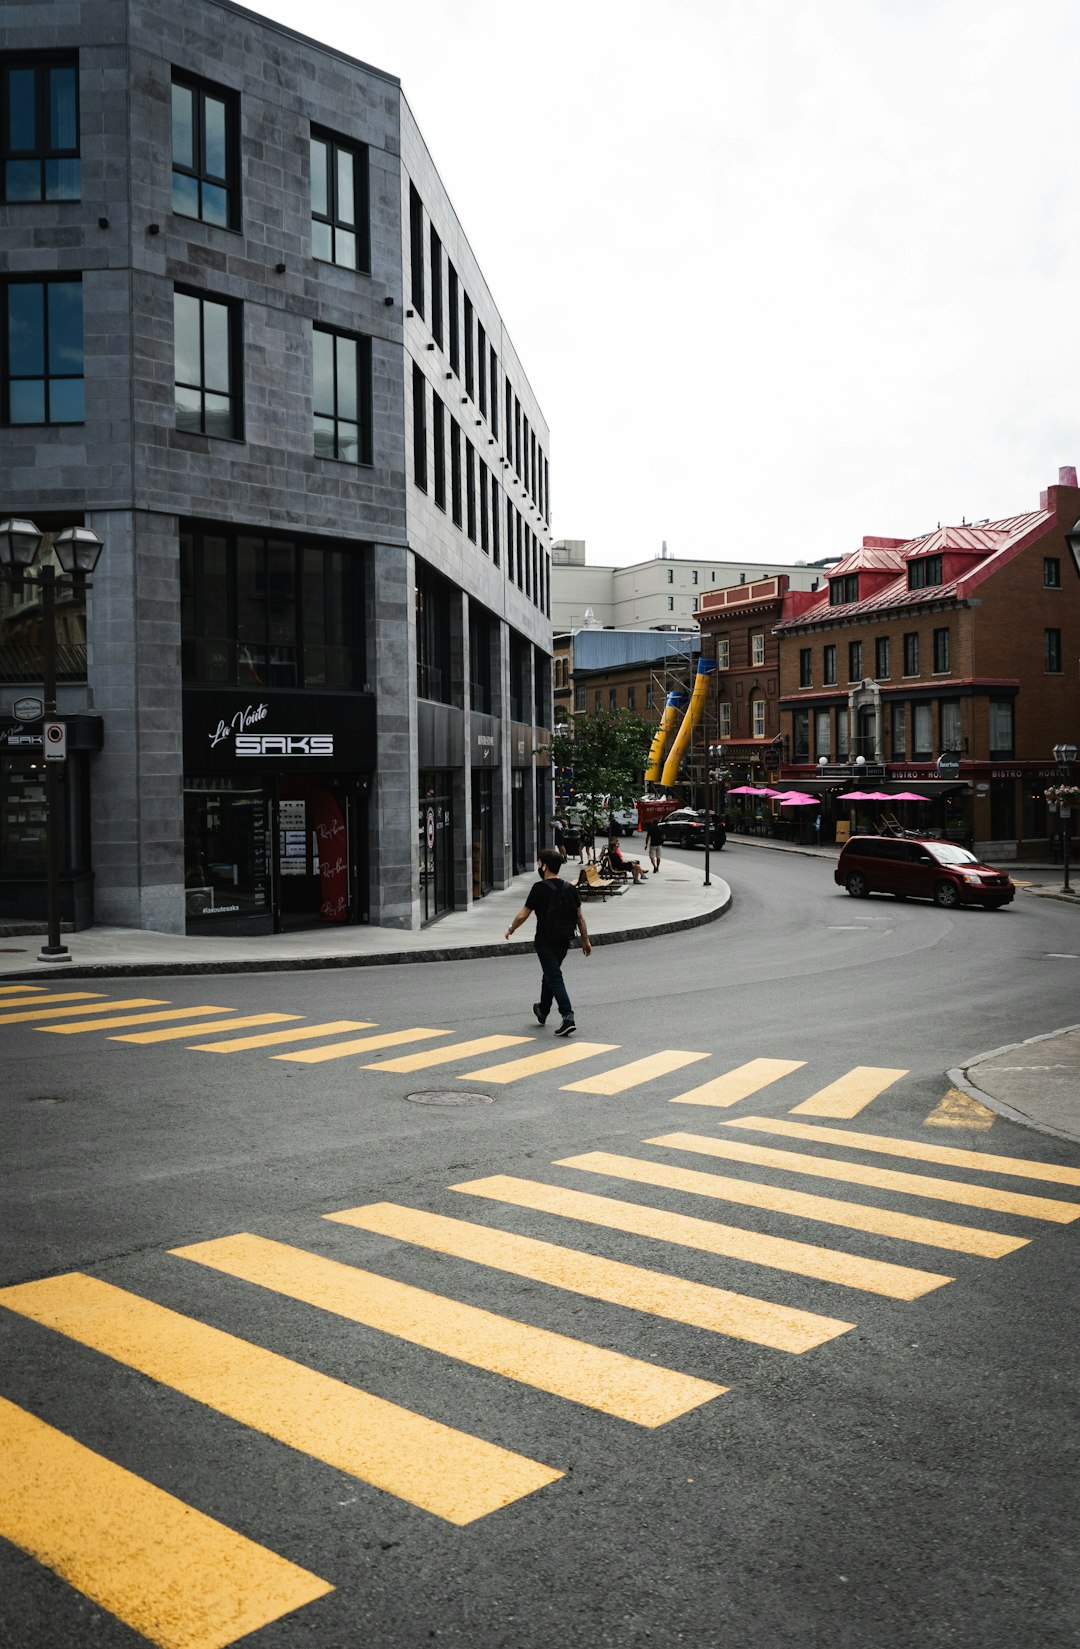 woman in black jacket walking on pedestrian lane during daytime